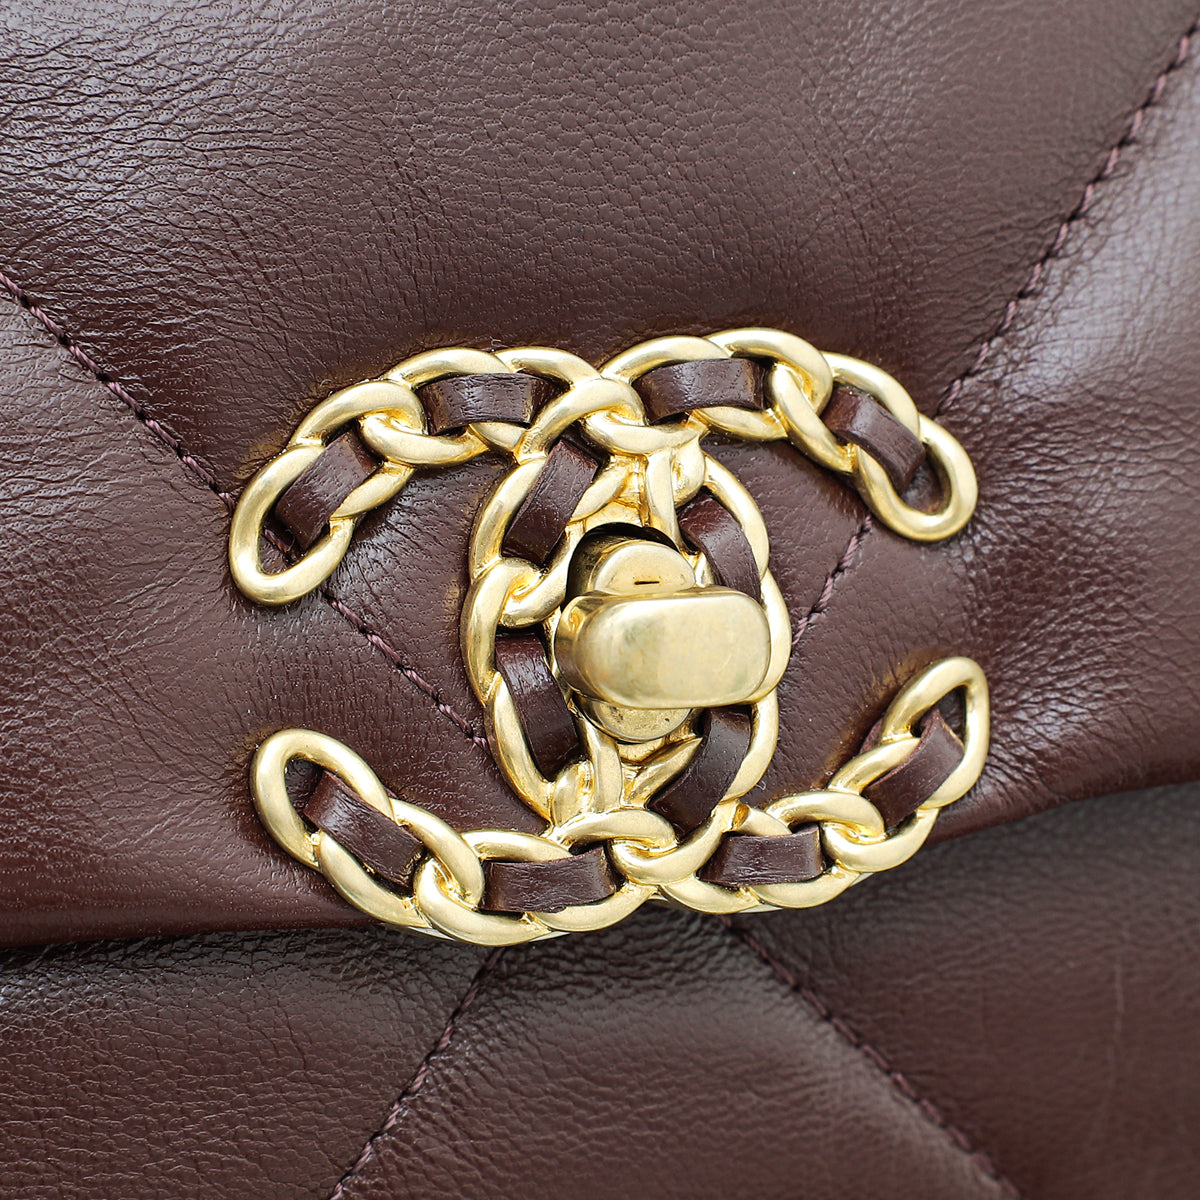 Chanel Chocolate Brown CC 19 Small Bag